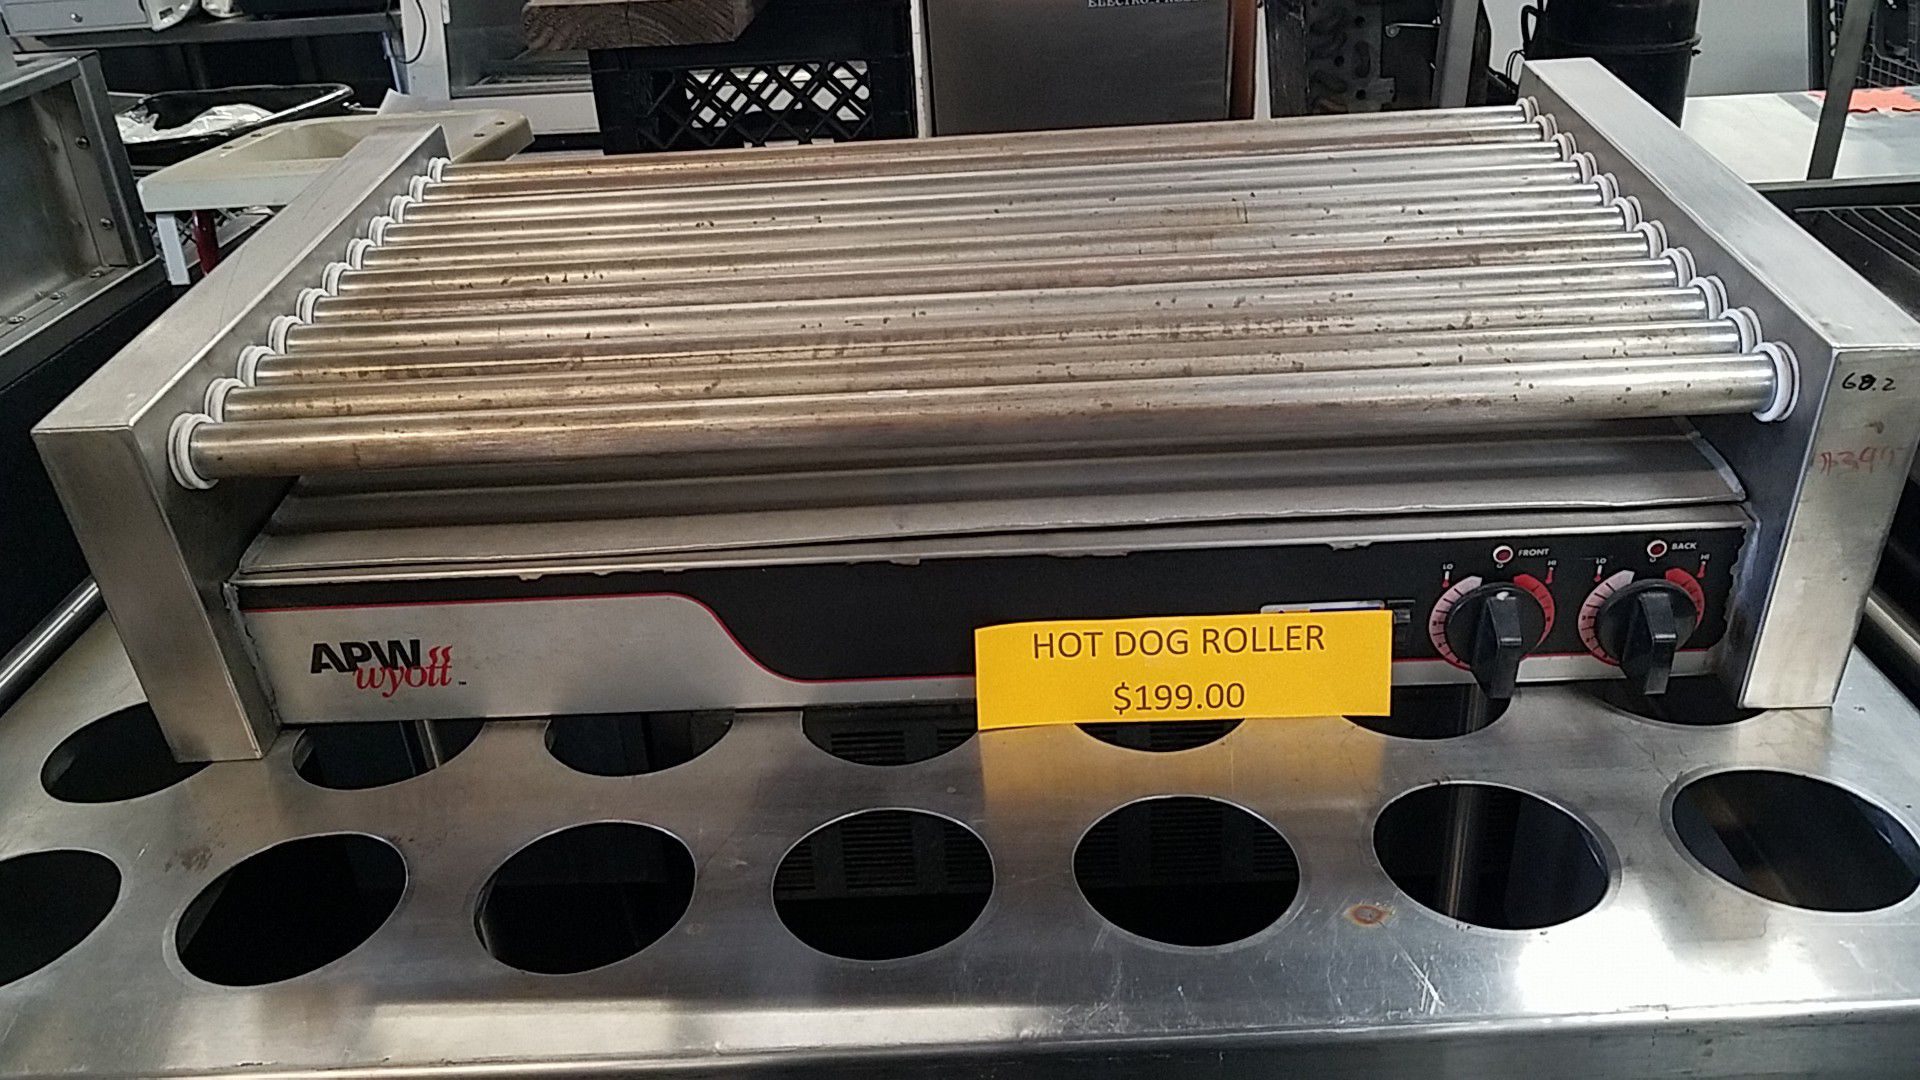 Hot dog roller, APW wyott 36 inch